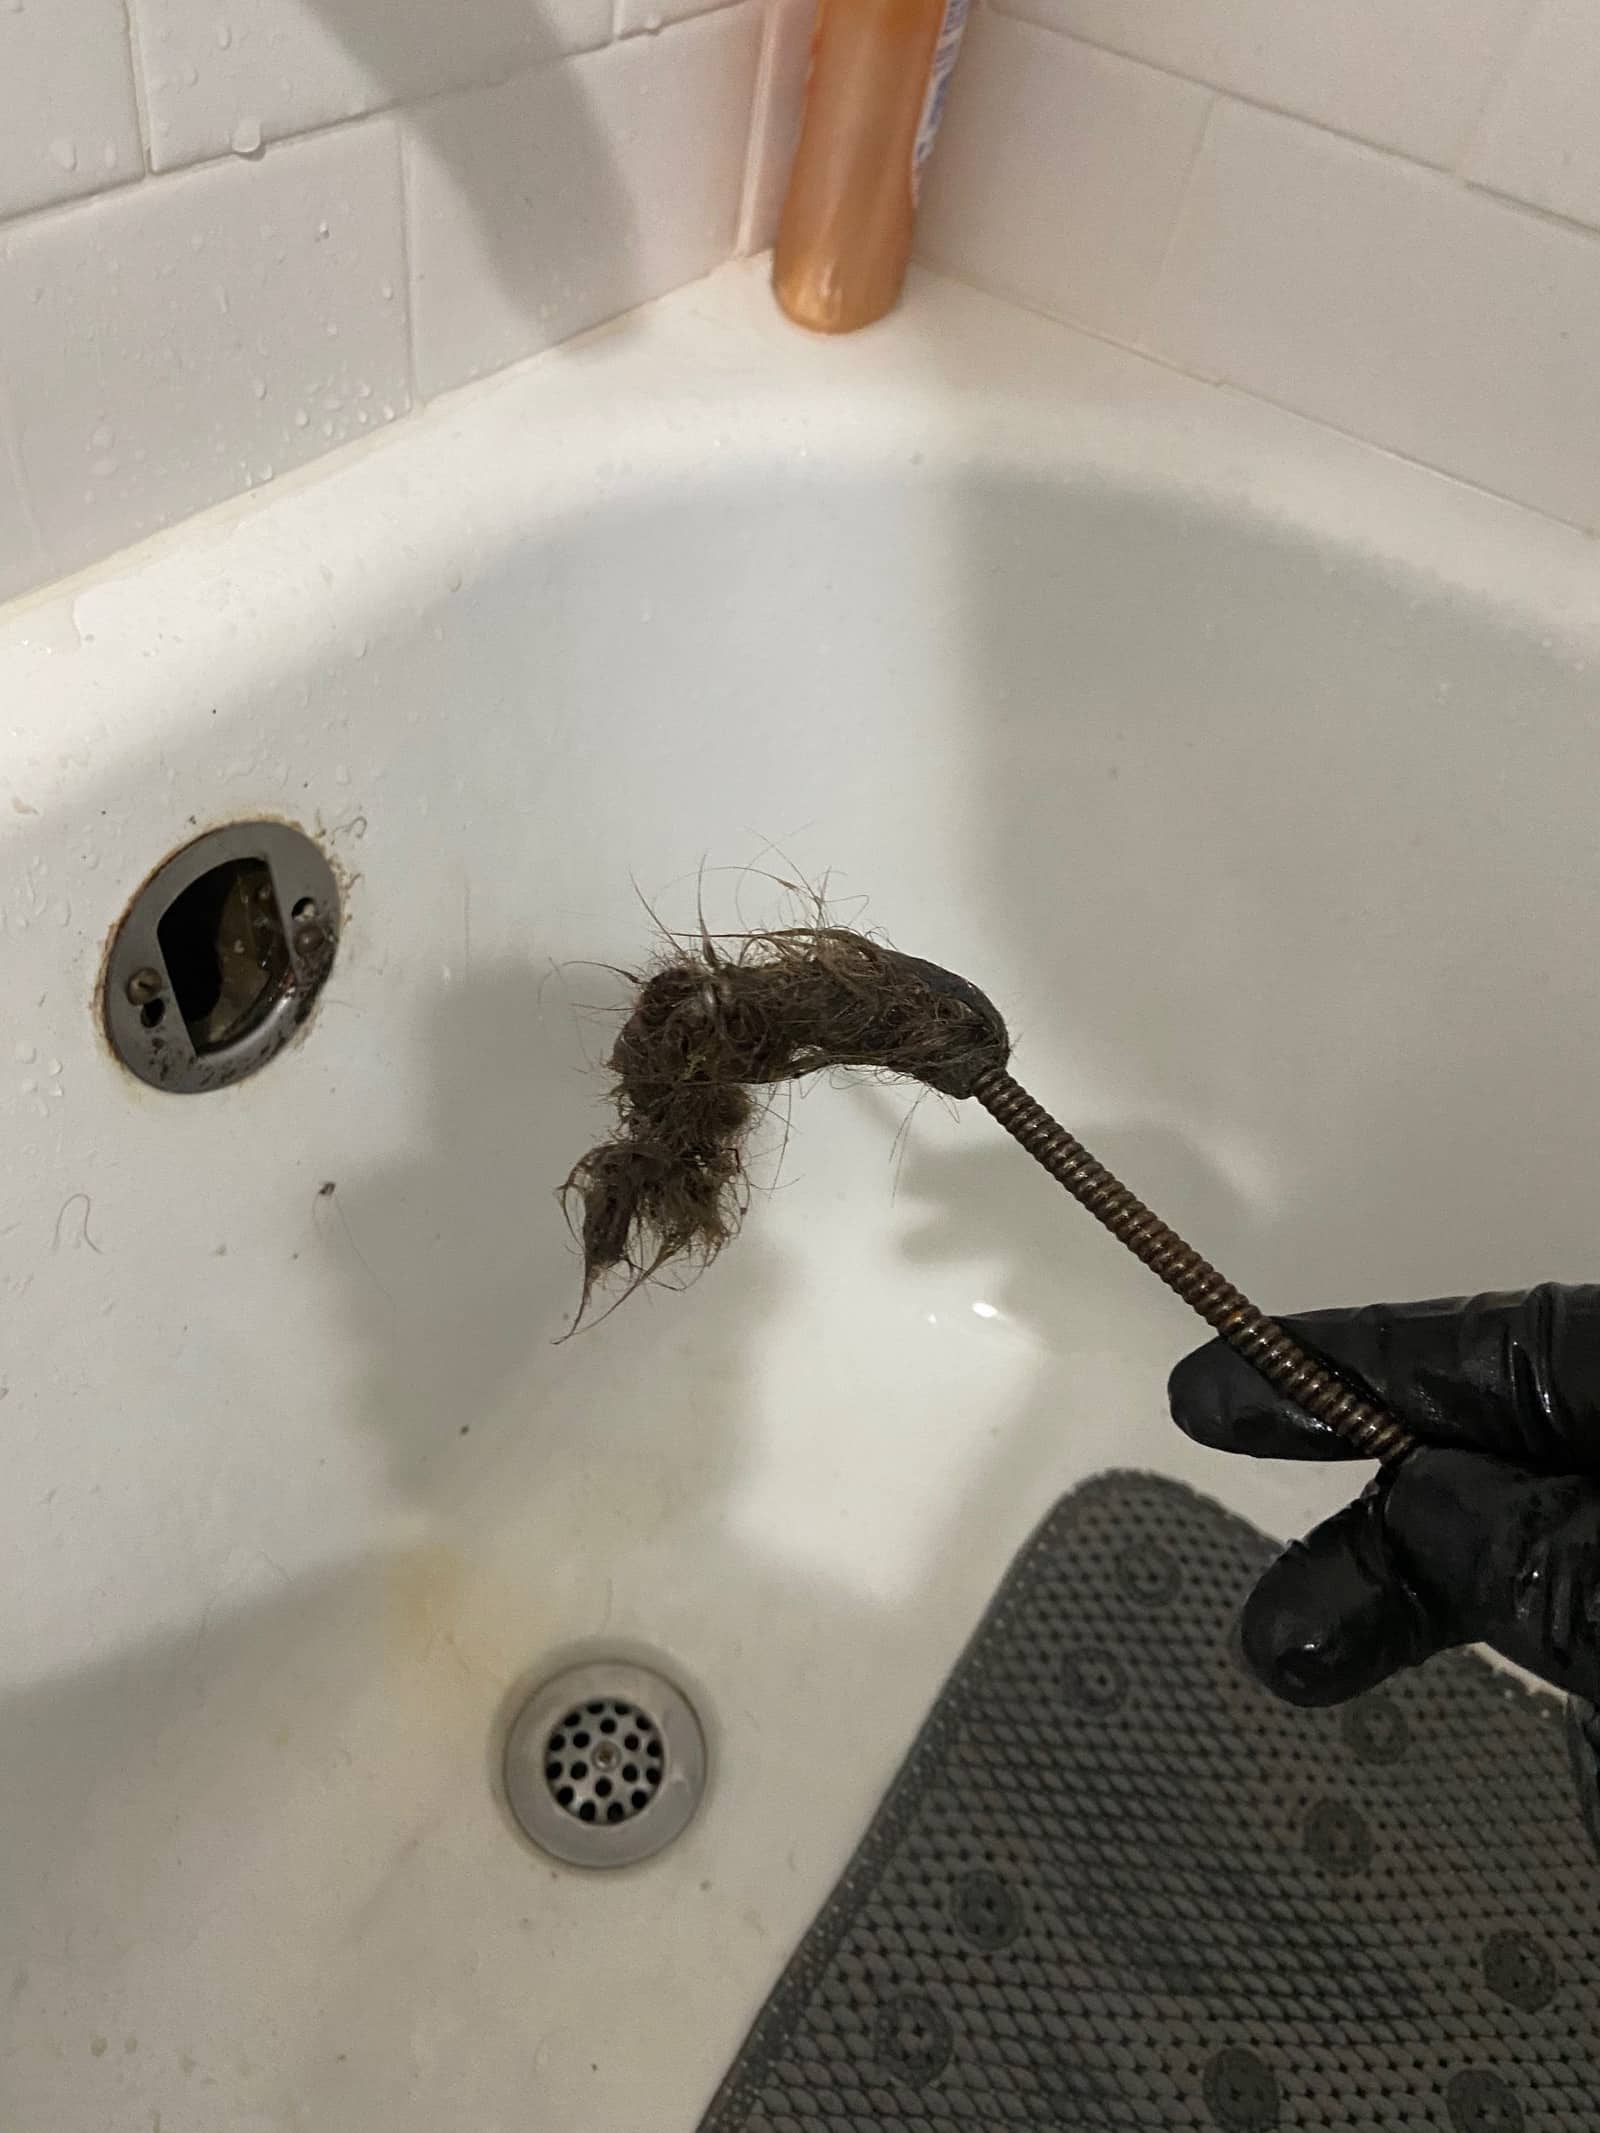 https://www.sacramentoplumbingsolutions.com/wp-content/uploads/unclogged-drain-hair.jpeg